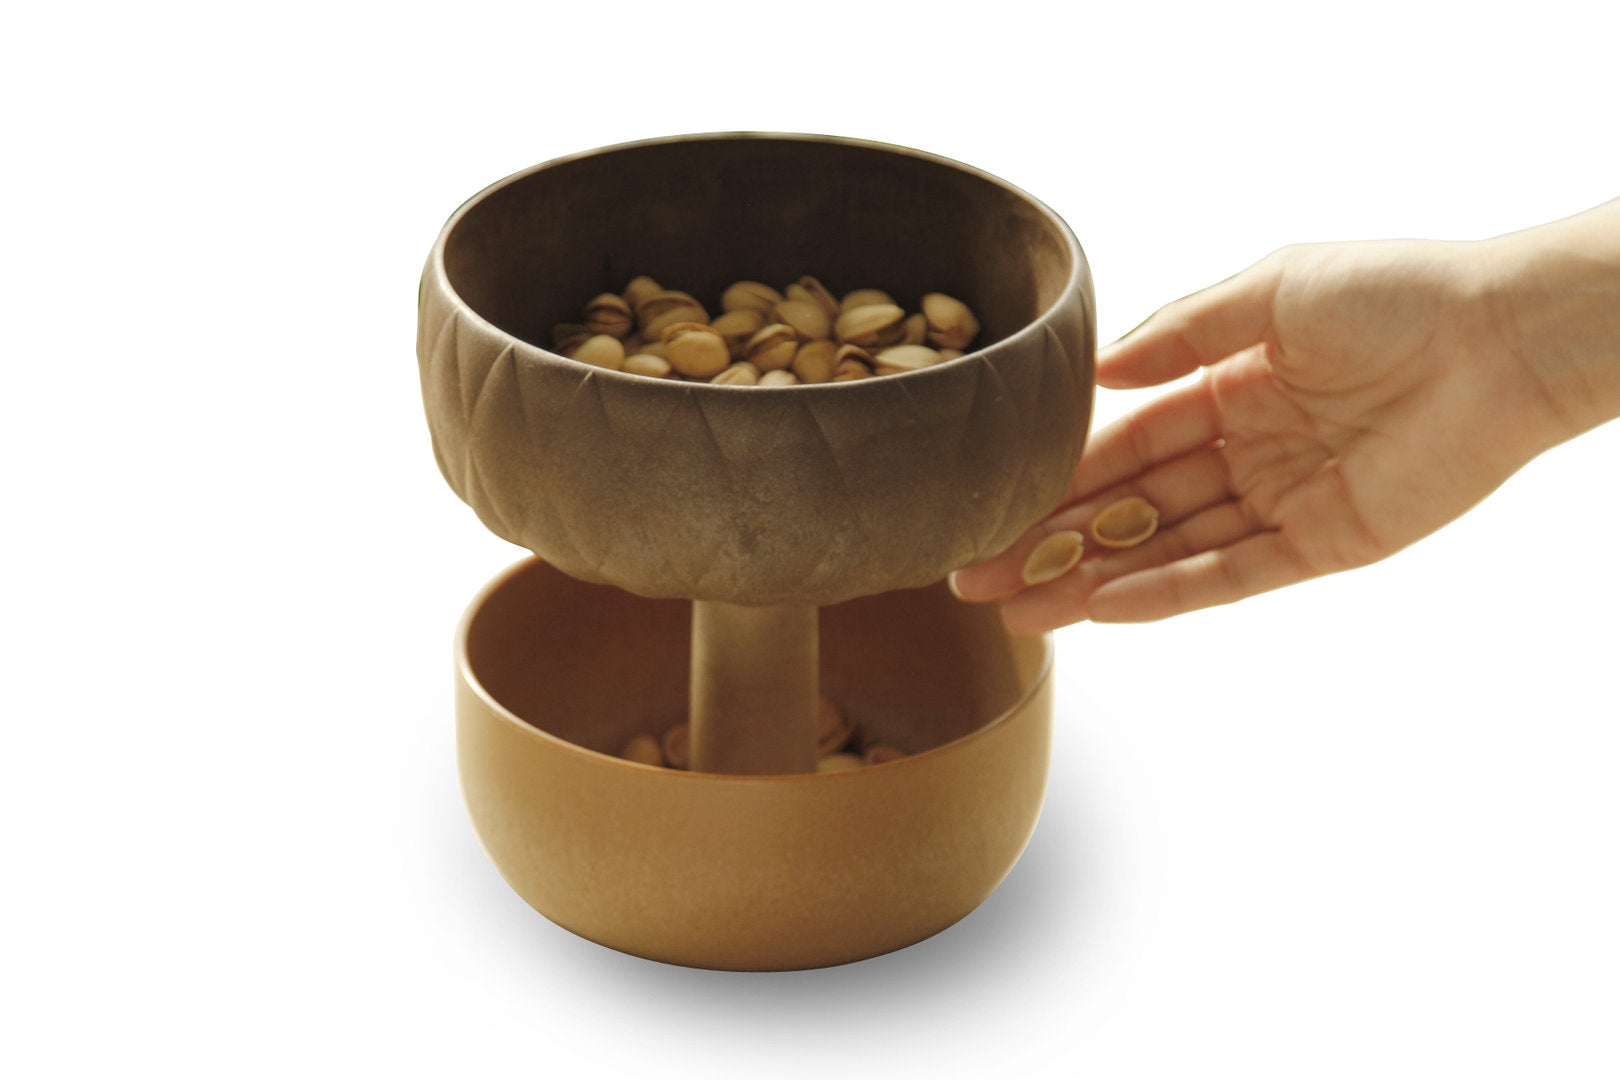 Nut snack bowl "Acorn snack bowl"